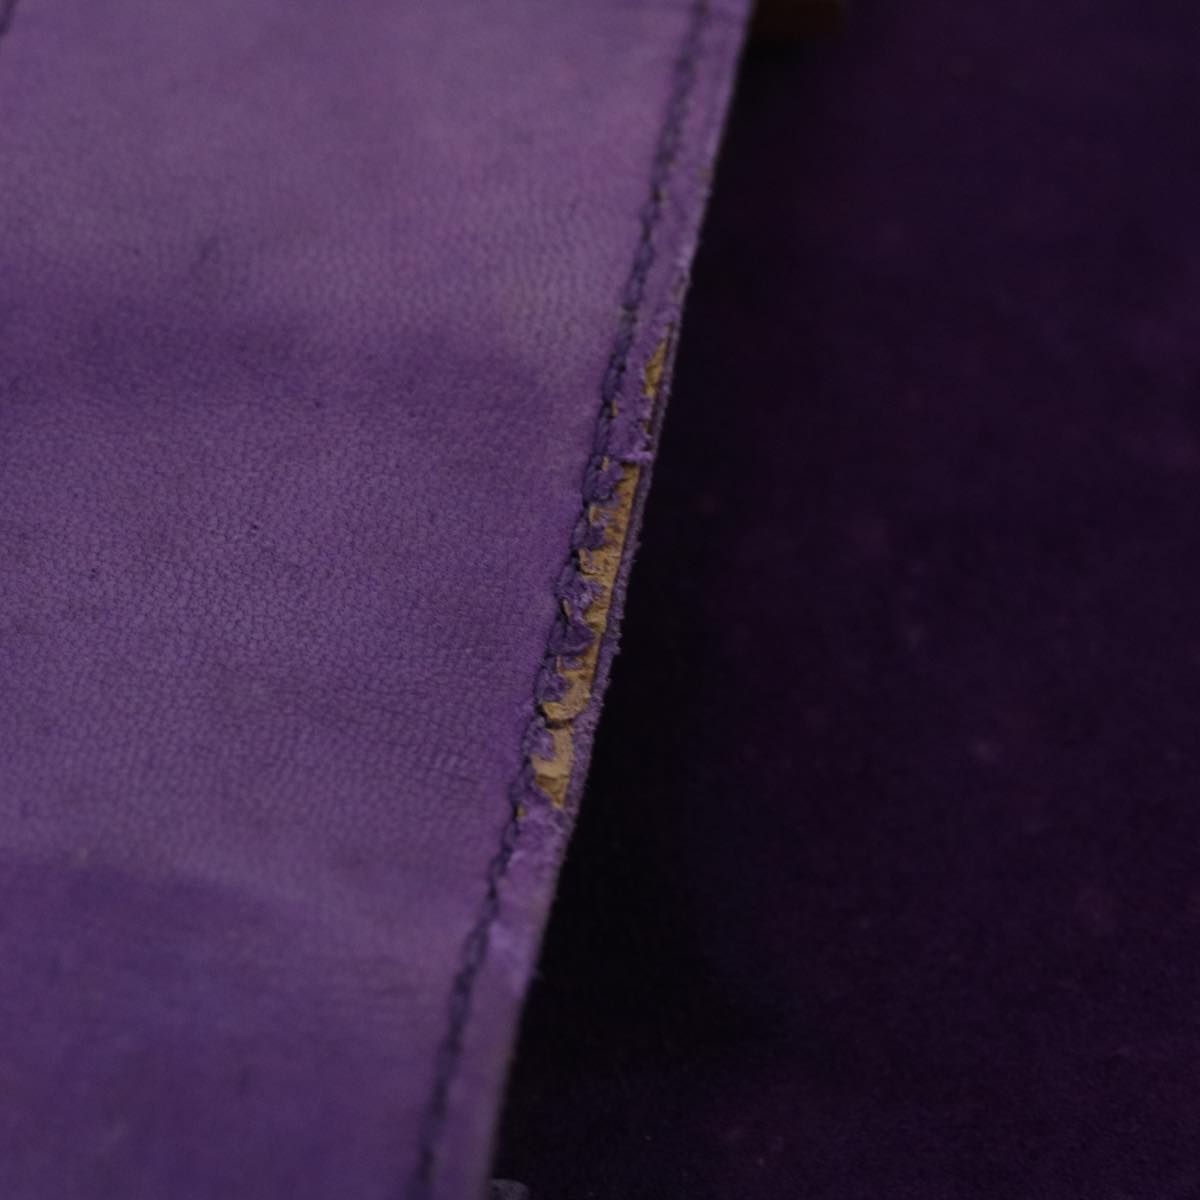 FENDI Shoulder Bag Suede Purple Auth bs8035